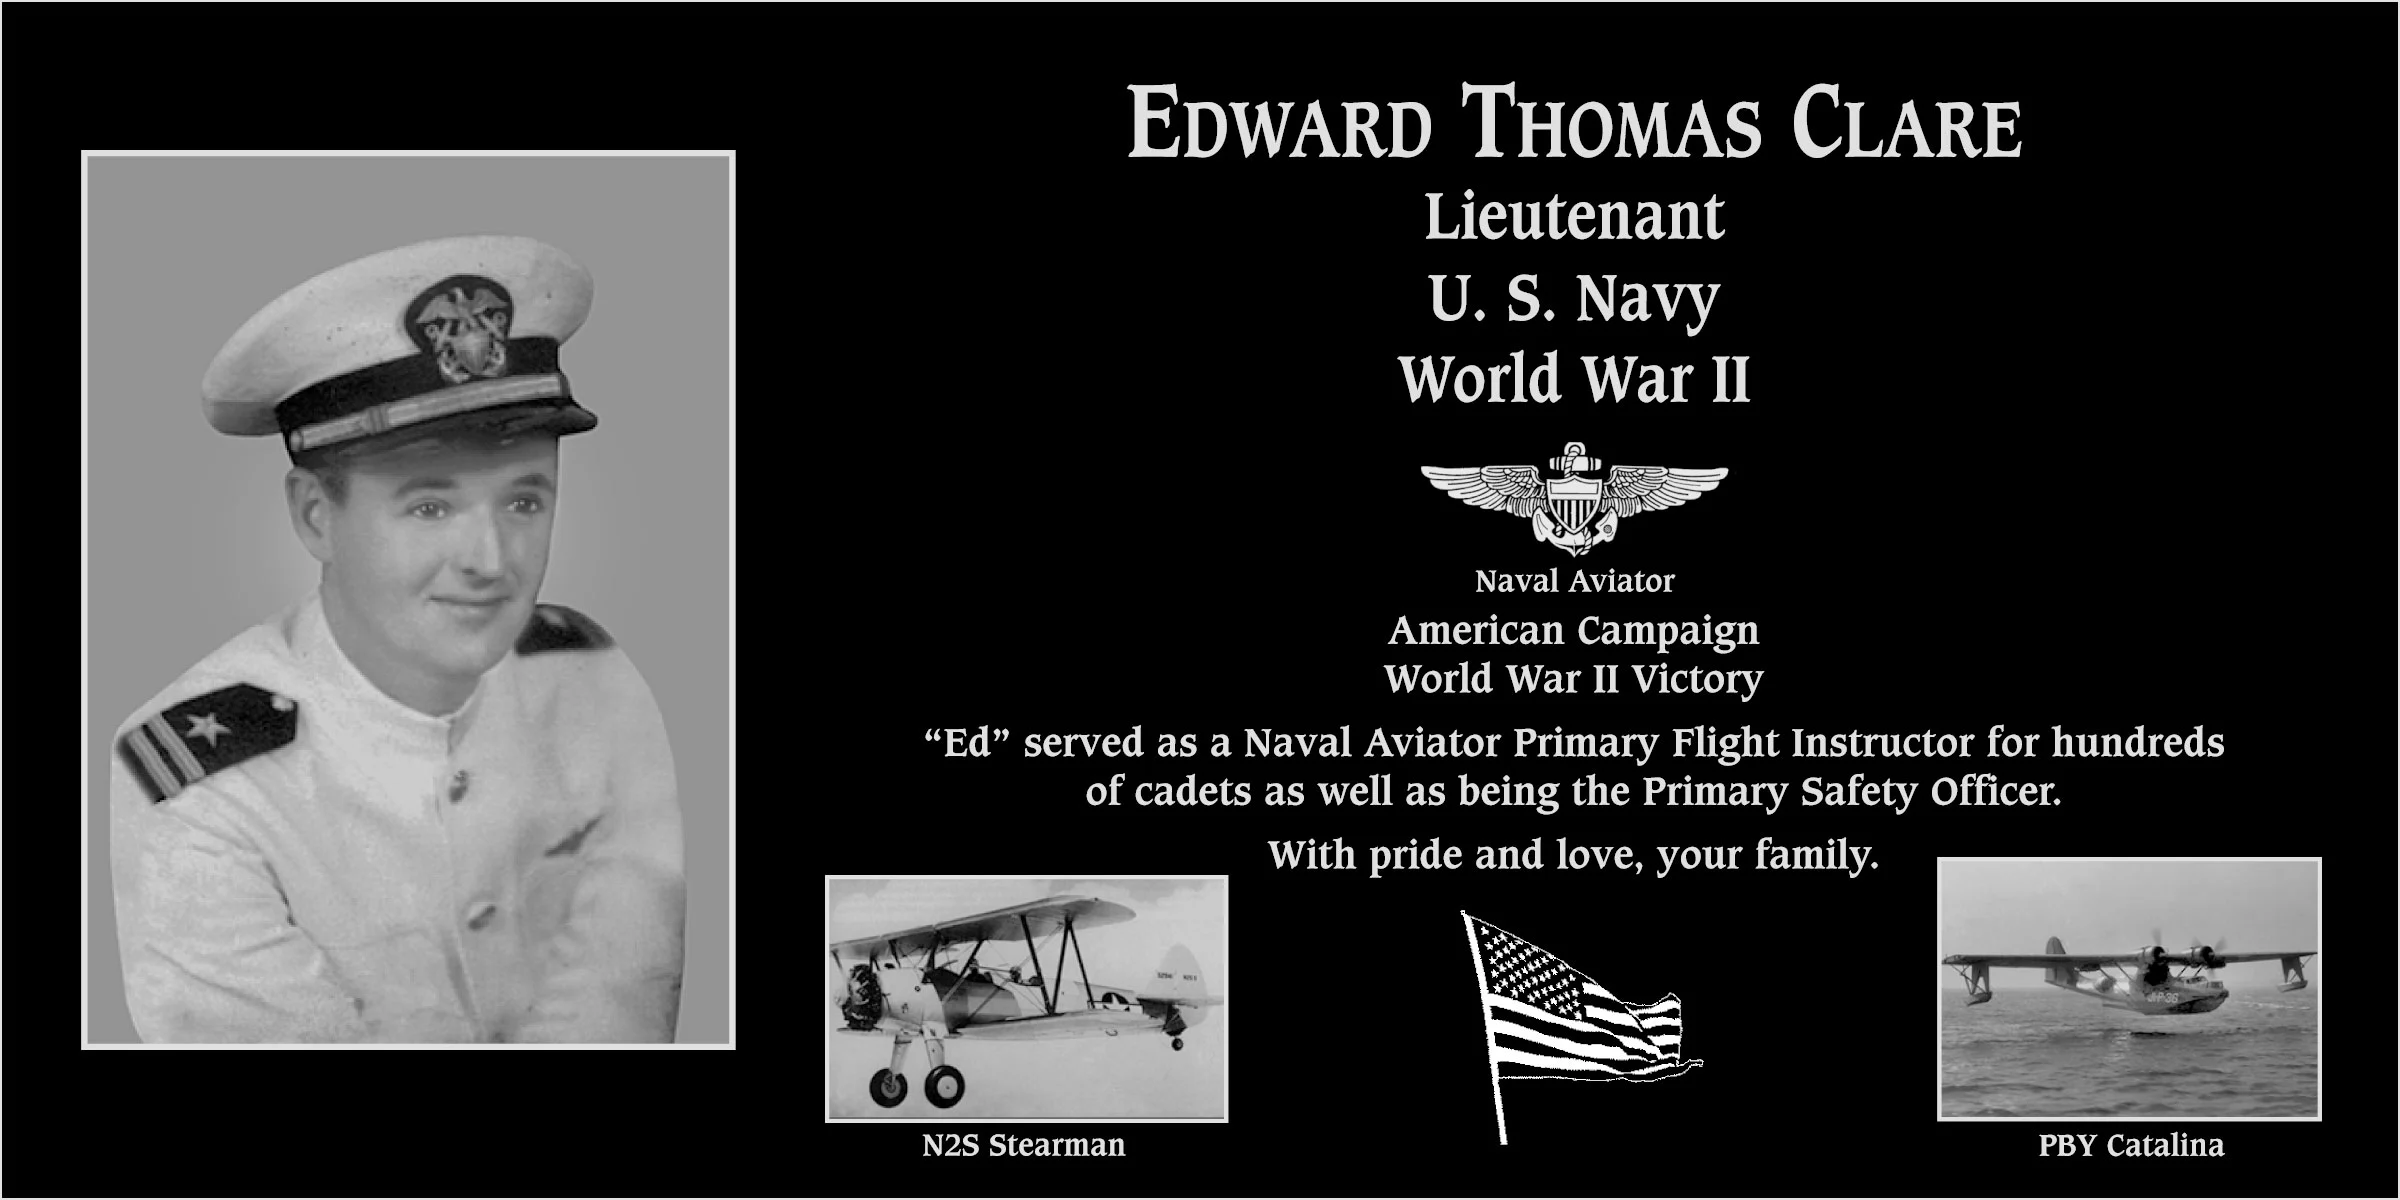 Edward Thomas “Ed” Clare